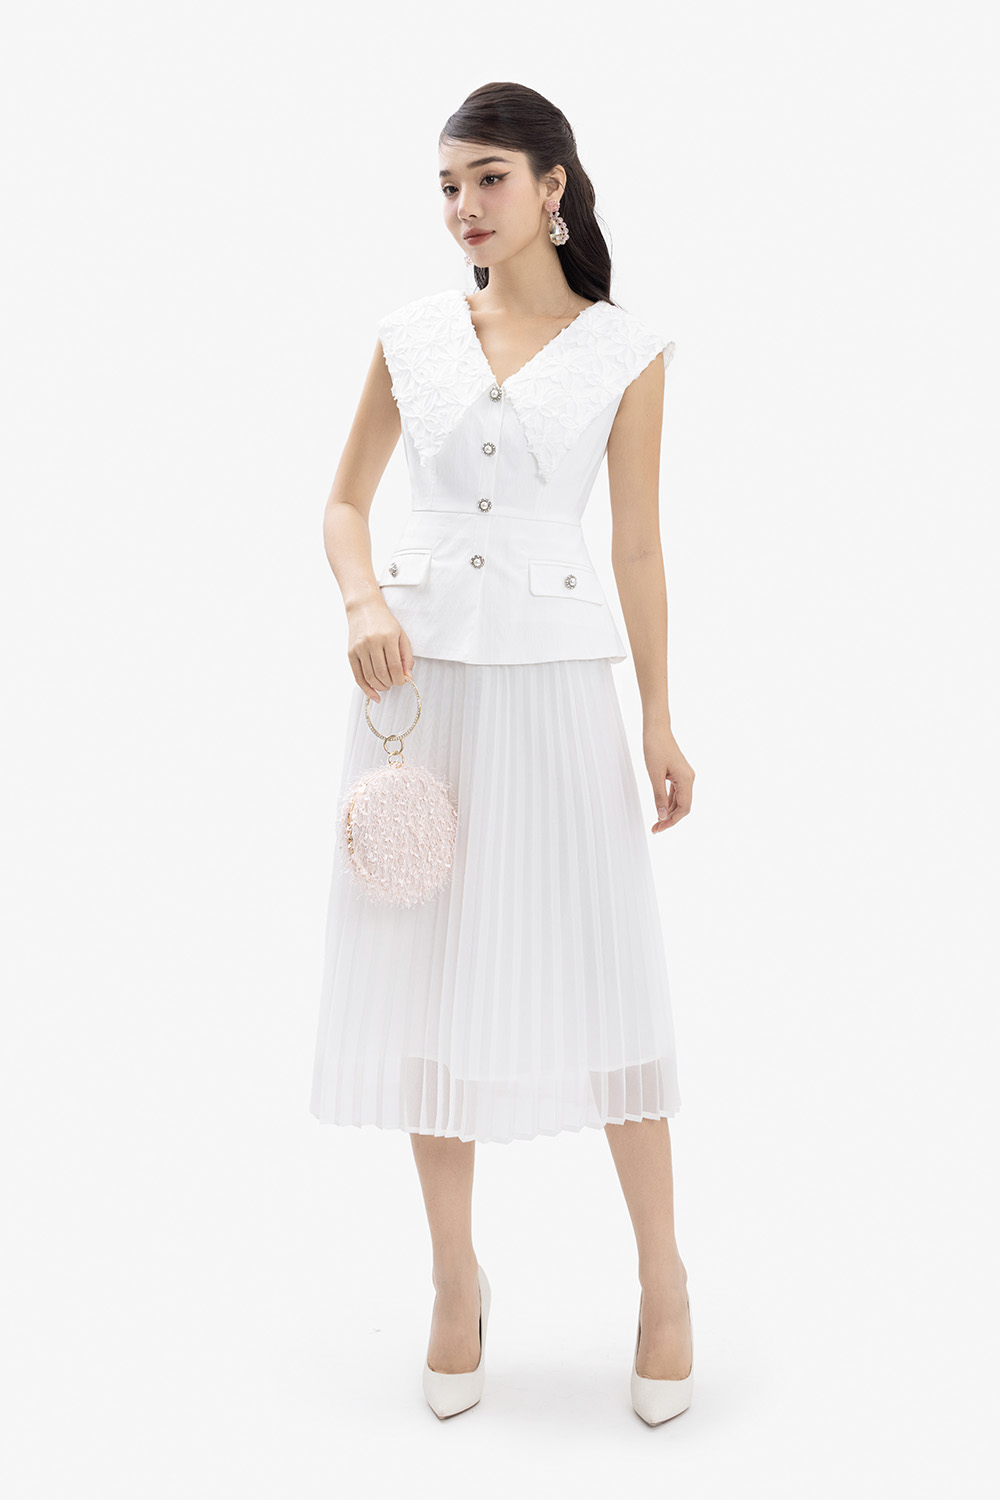 Đầm lệch vai dáng xòe màu trắng HL15-13 | Thời trang công sở K&K Fashion